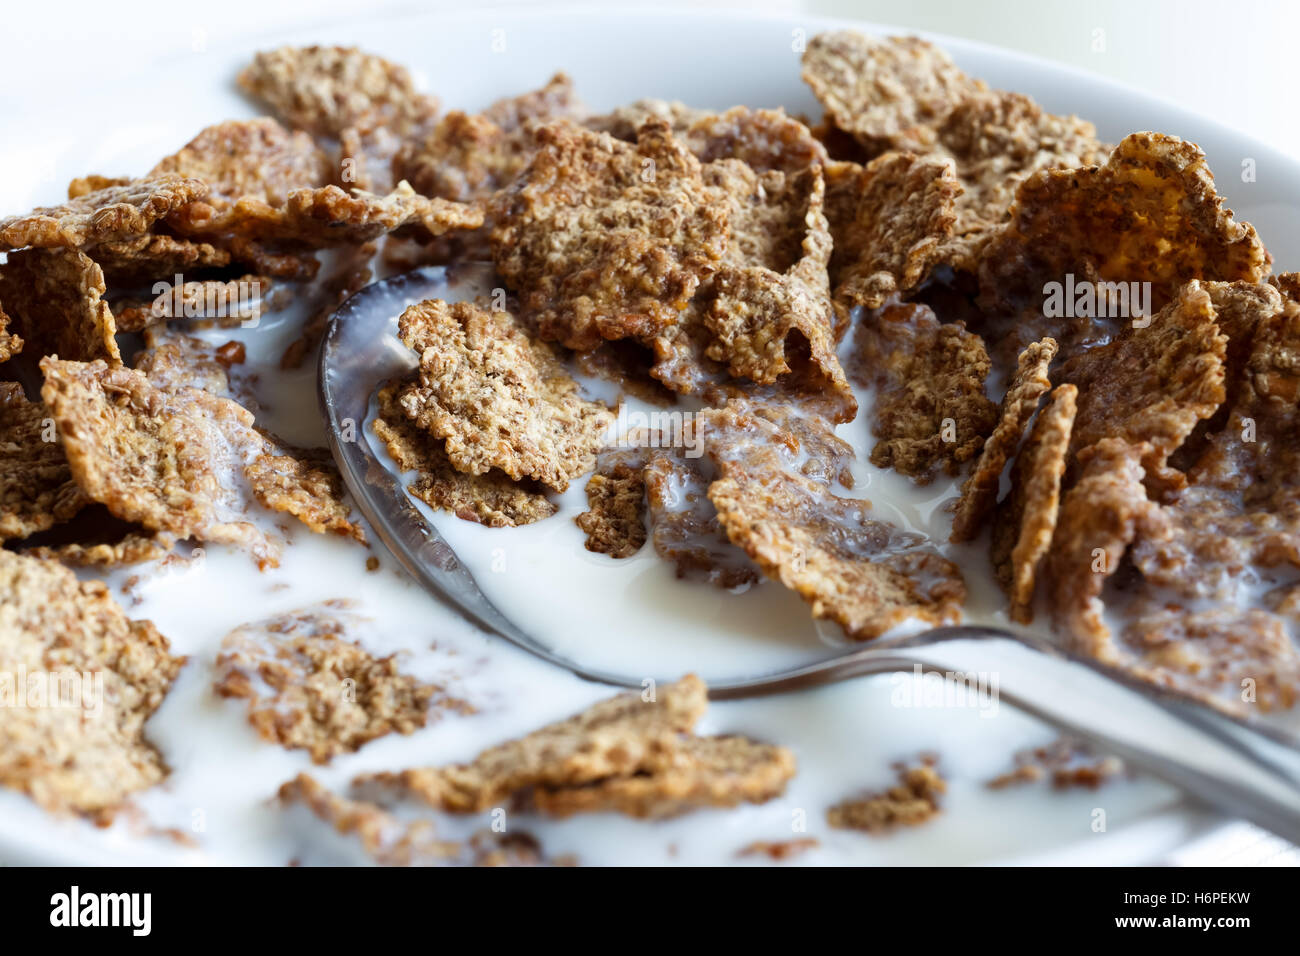 Dettaglio delle mezze mangiate di crusca di frumento Cereali per la prima colazione con il latte e il cucchiaio nella ciotola. Foto Stock